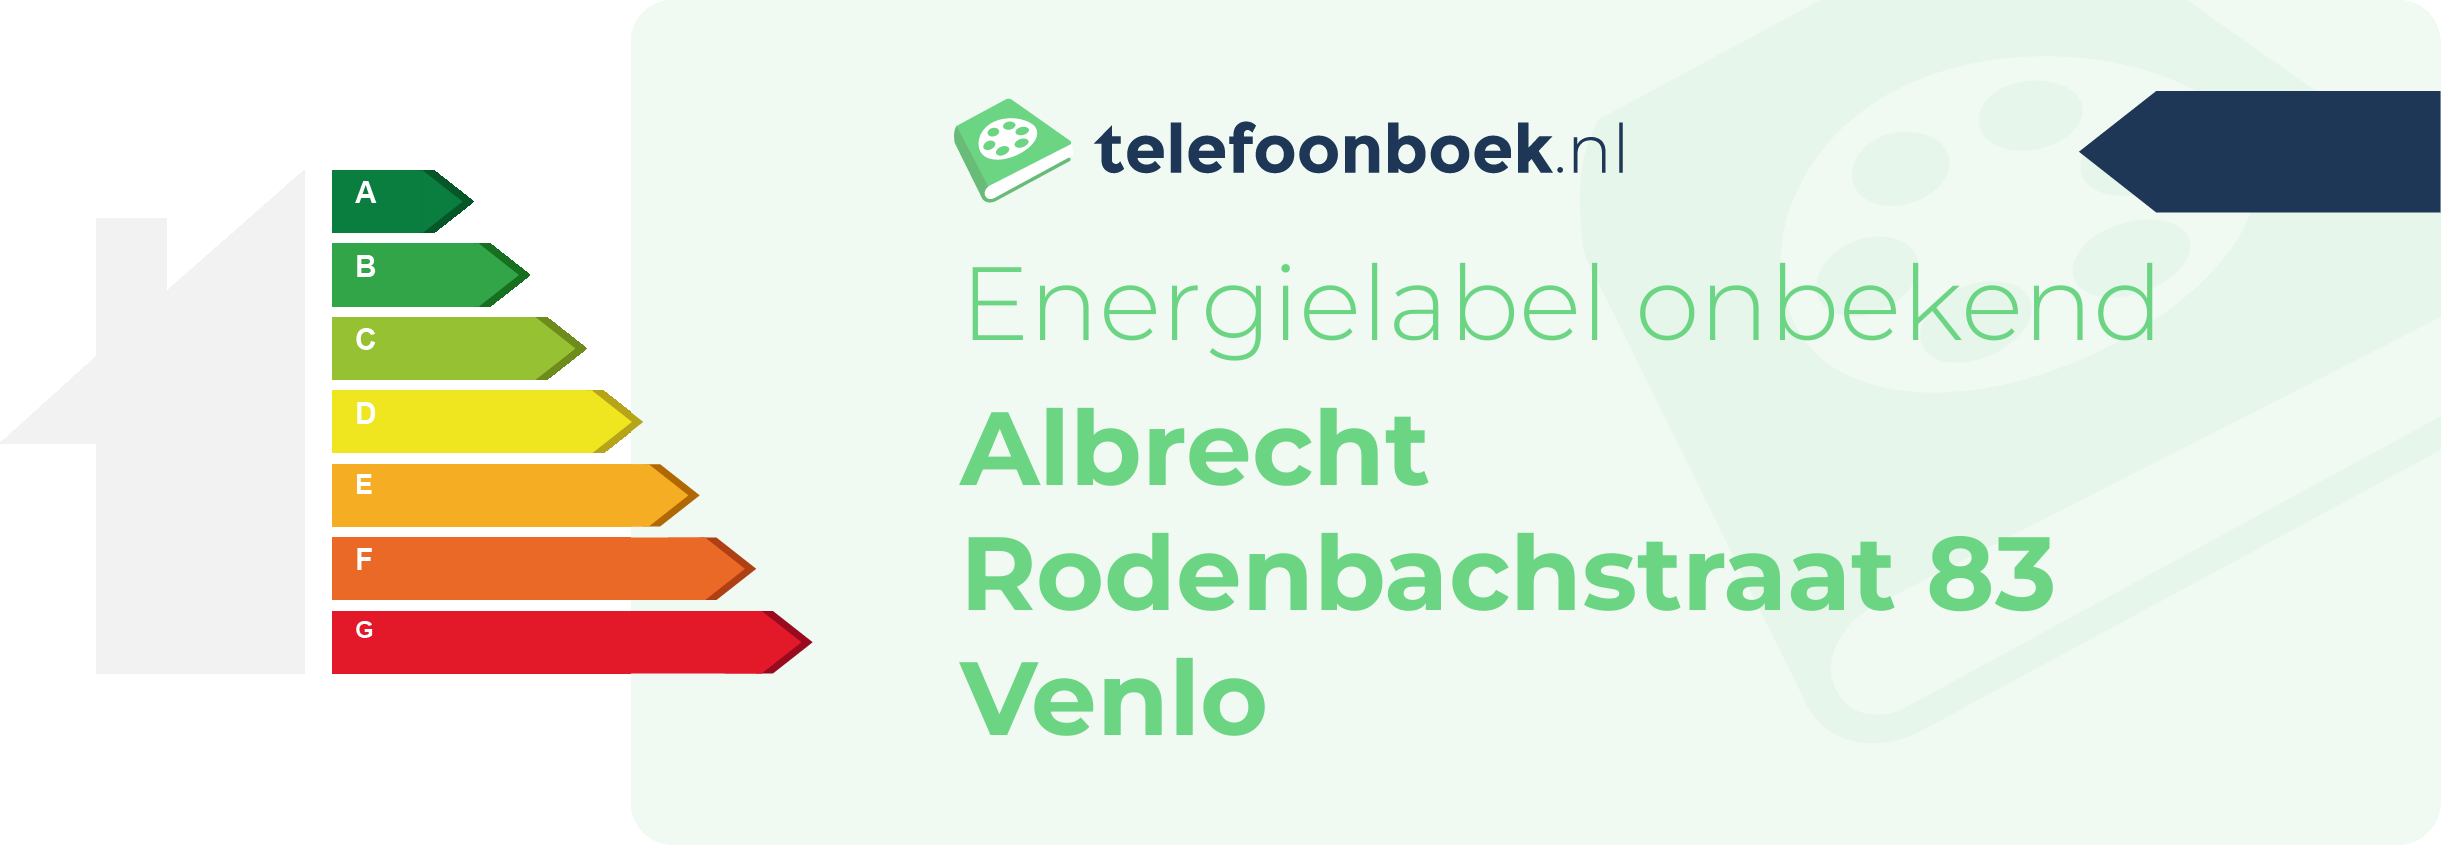 Energielabel Albrecht Rodenbachstraat 83 Venlo